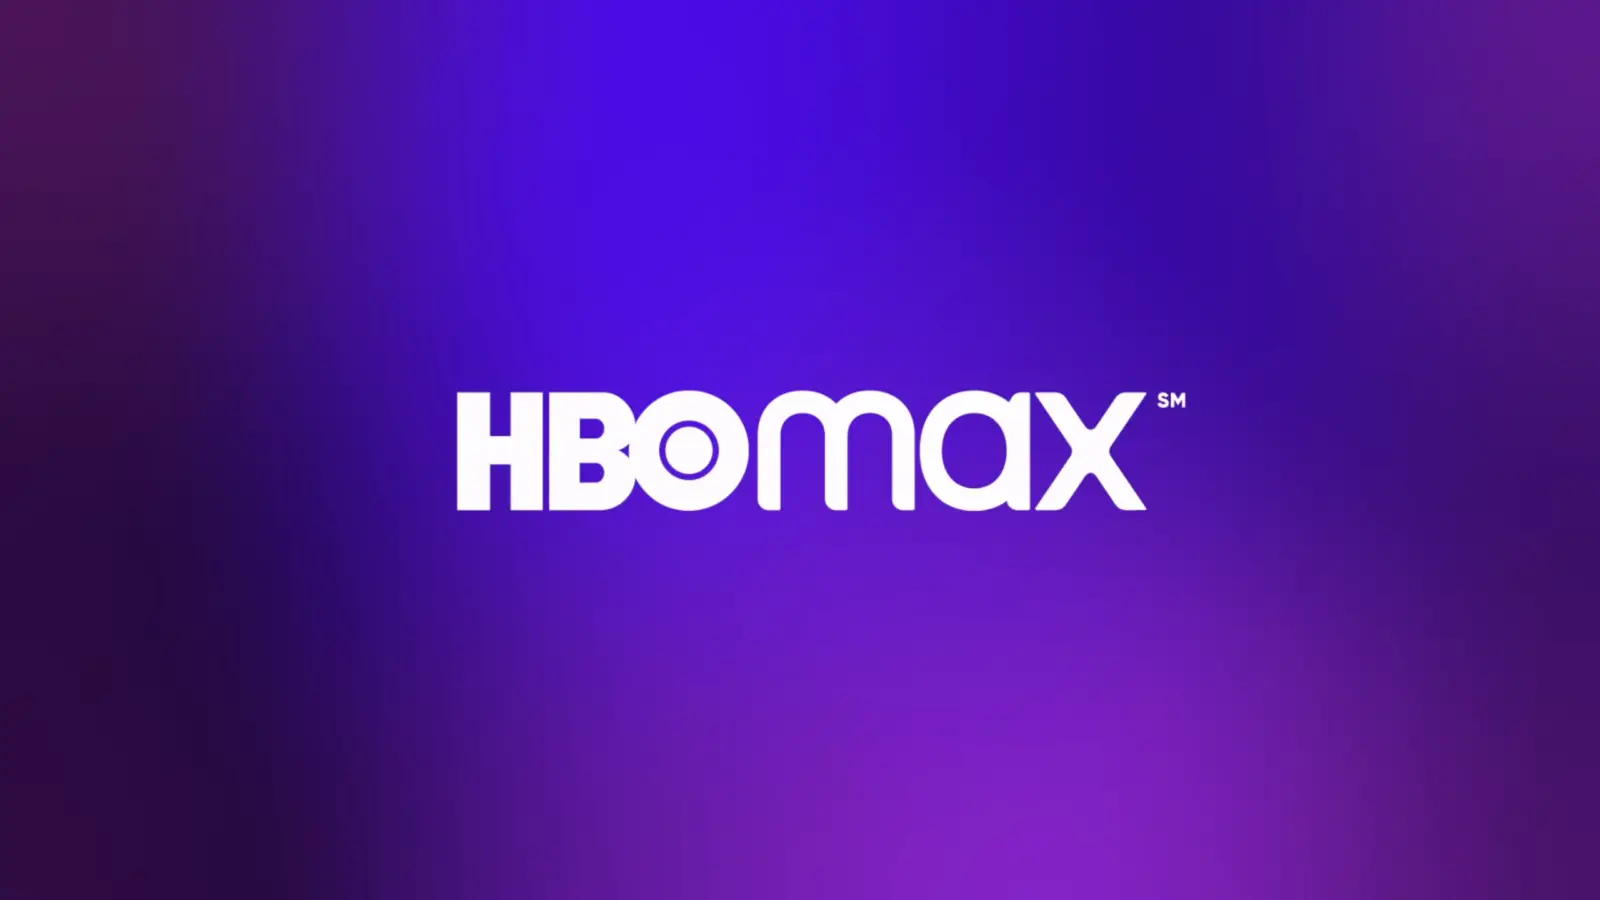 Estas séries estão em destaque na HBO Max